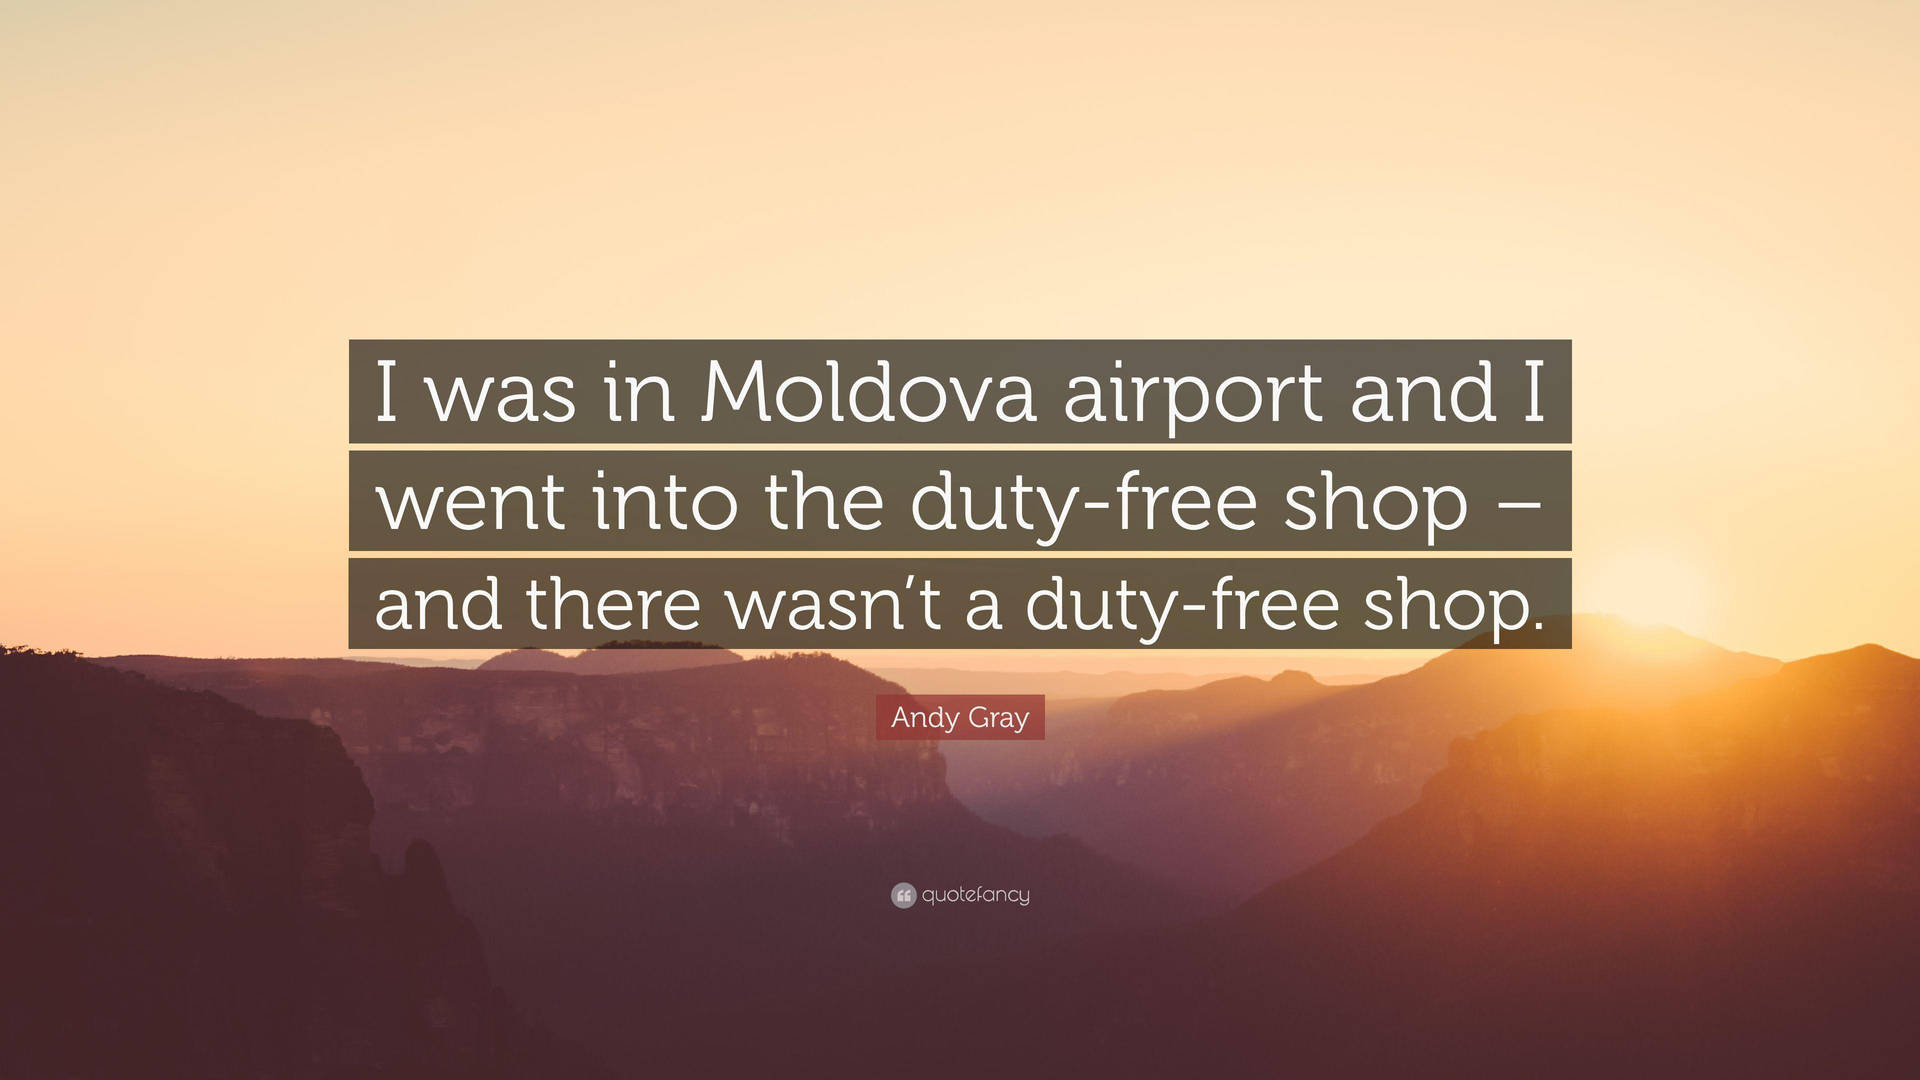 Tourist Mountain Moldovas Quote Background